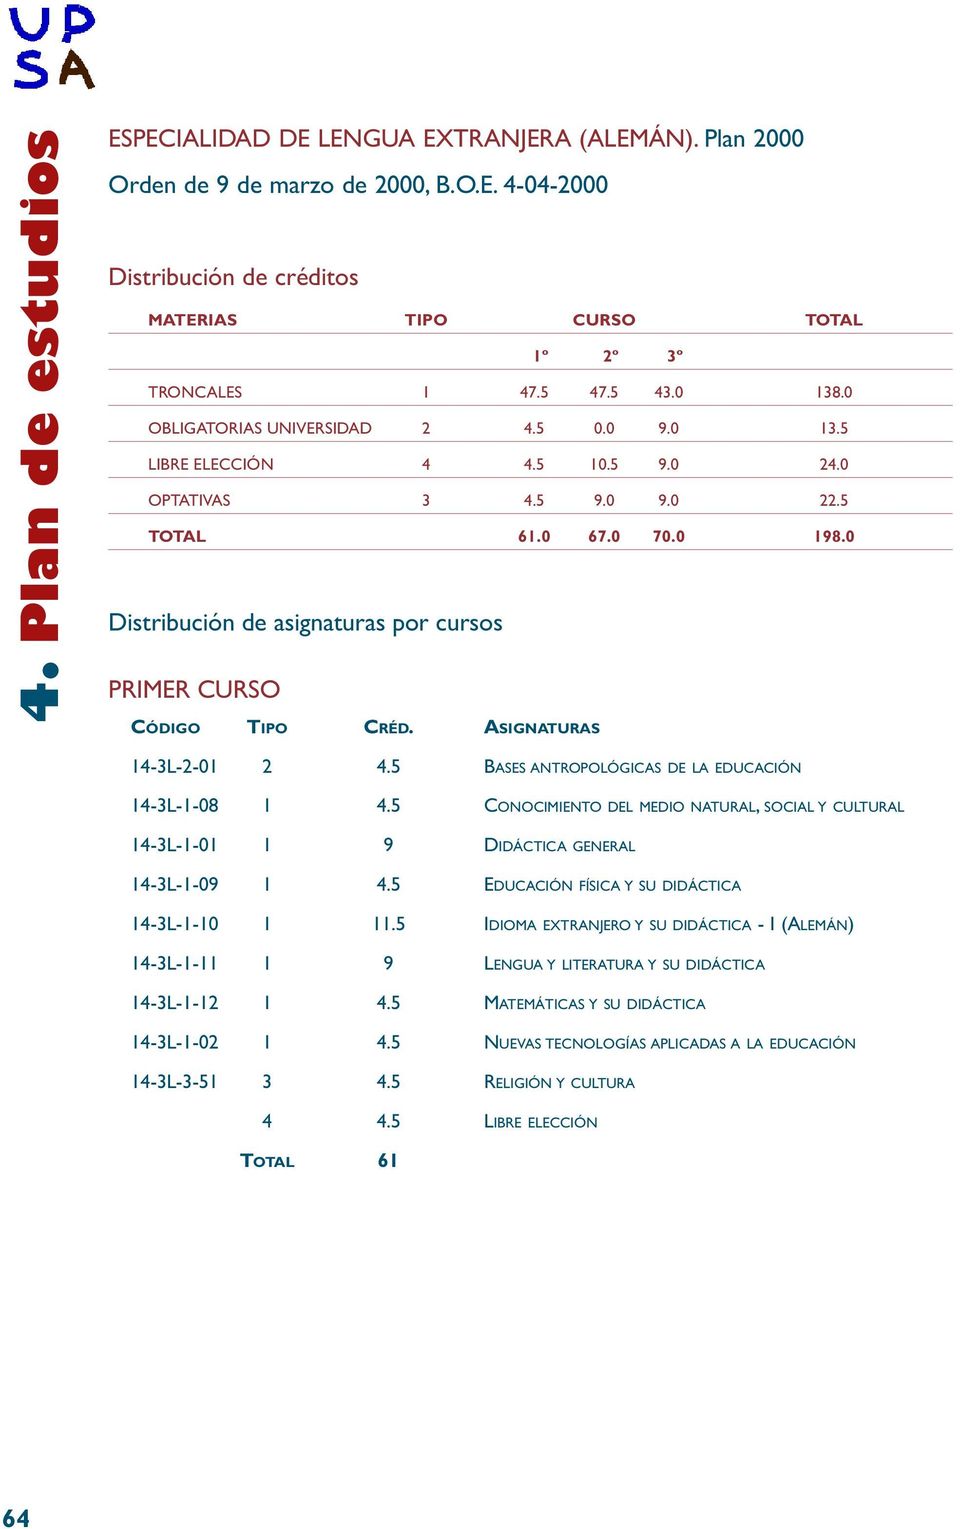 0 Distribución de asignaturas por cursos PRIMER CURSO 14-3L-2-01 2 4.5 BASES ANTROPOLÓGICAS DE LA EDUCACIÓN 14-3L-1-08 1 4.